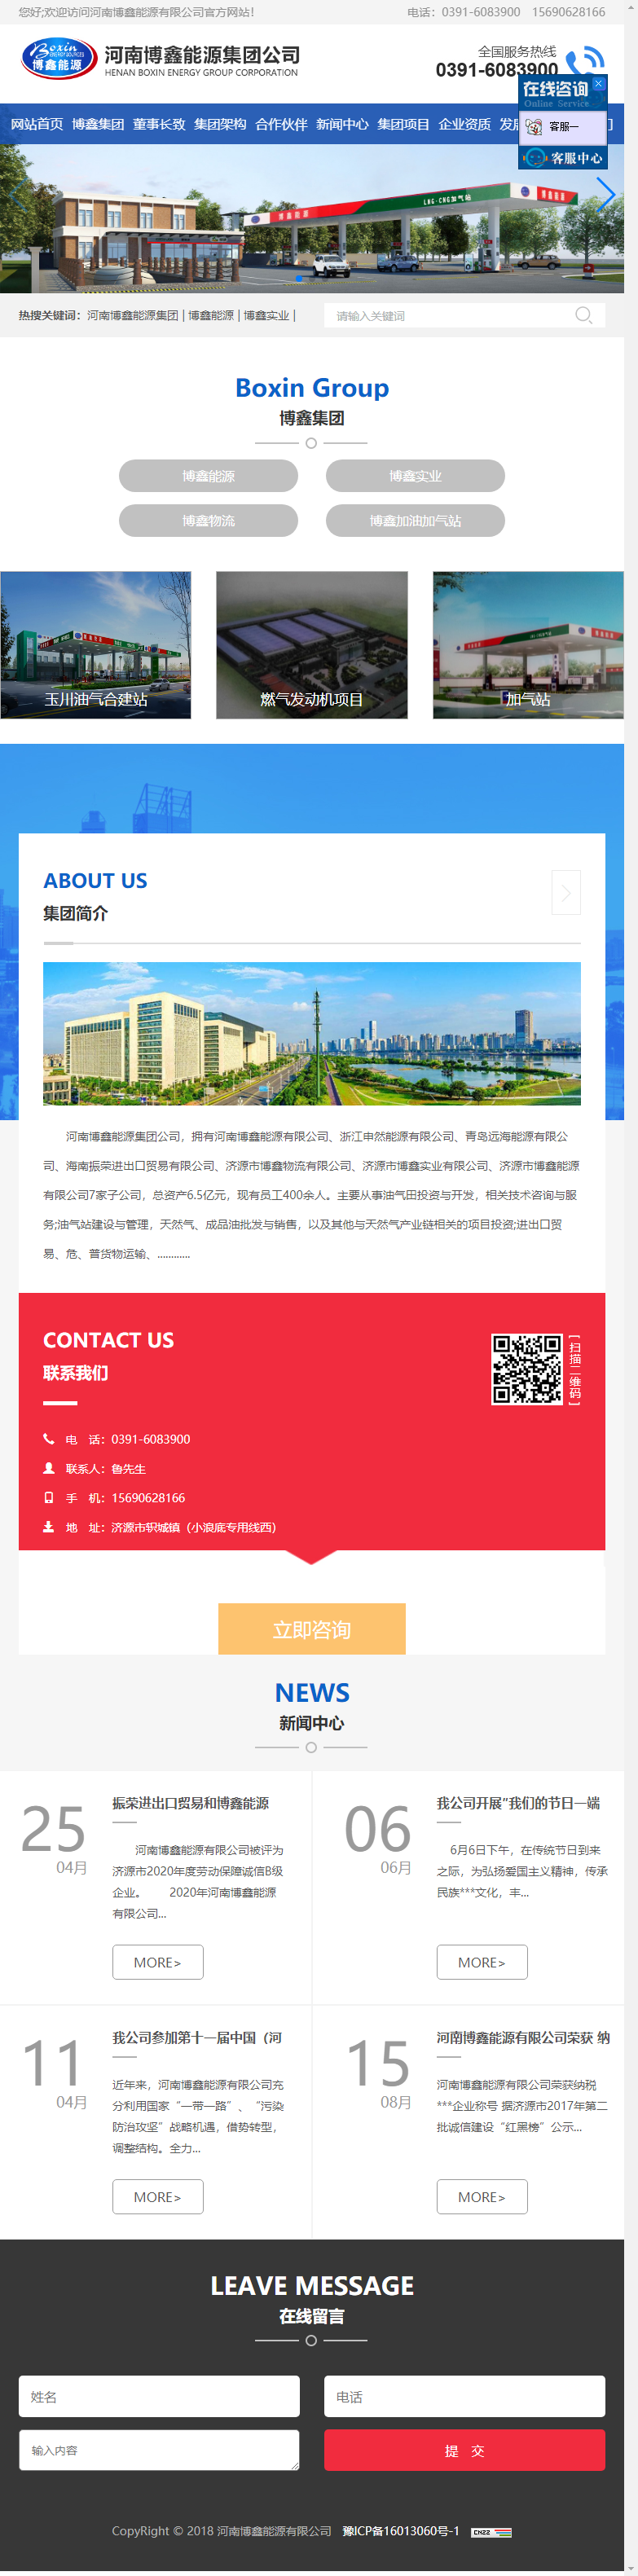 河南博鑫能源有限公司网站案例